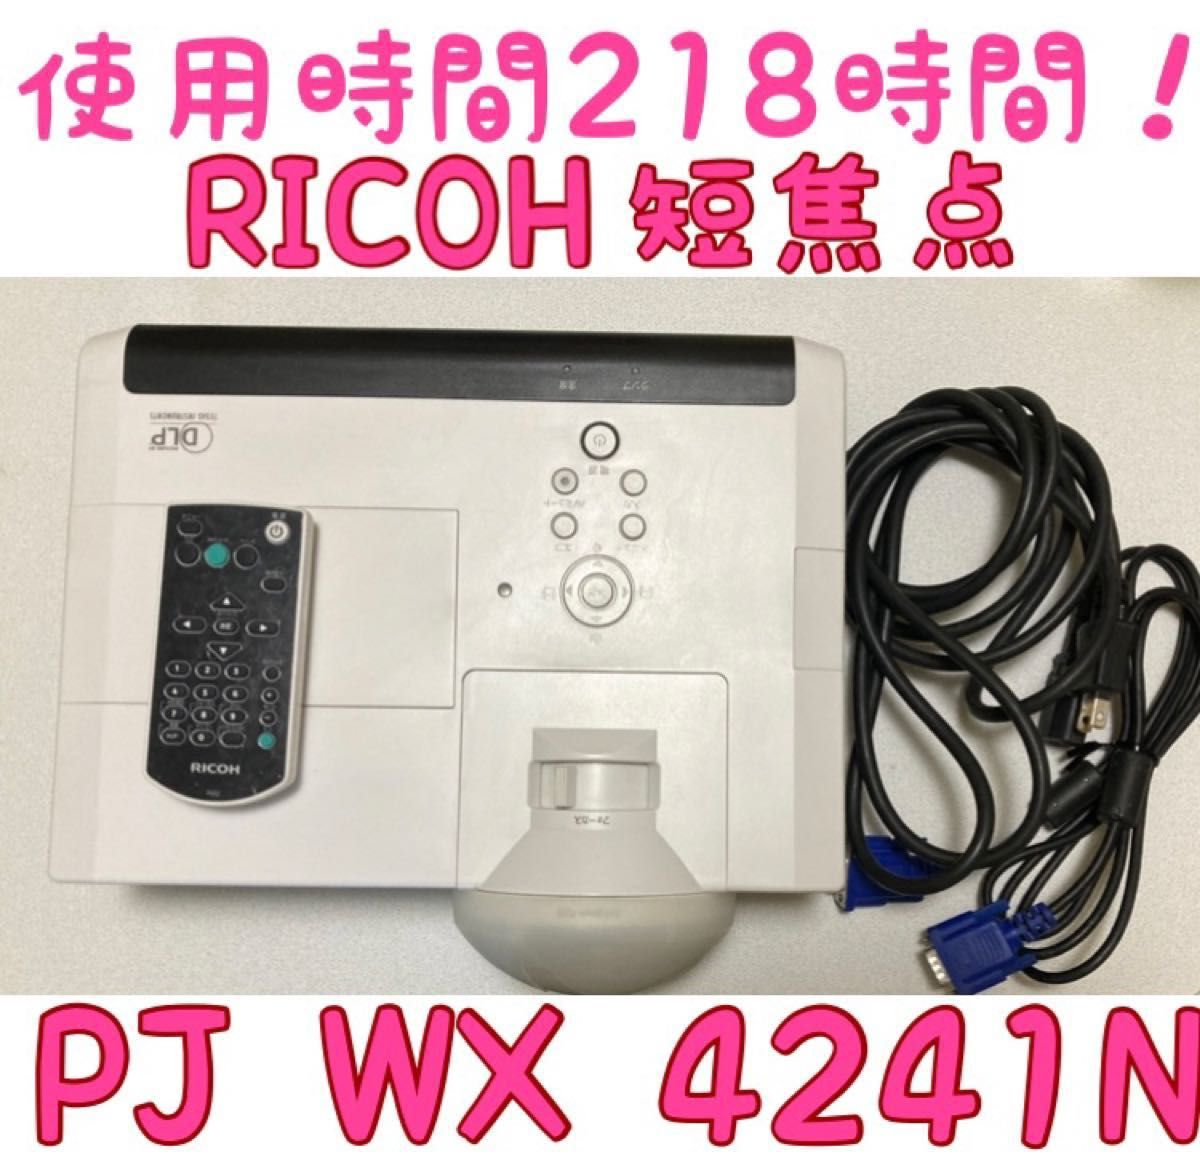 新作 RICOH リコー 短焦点プロジェクター PJ WX4241 N | www.tuttavia.eu